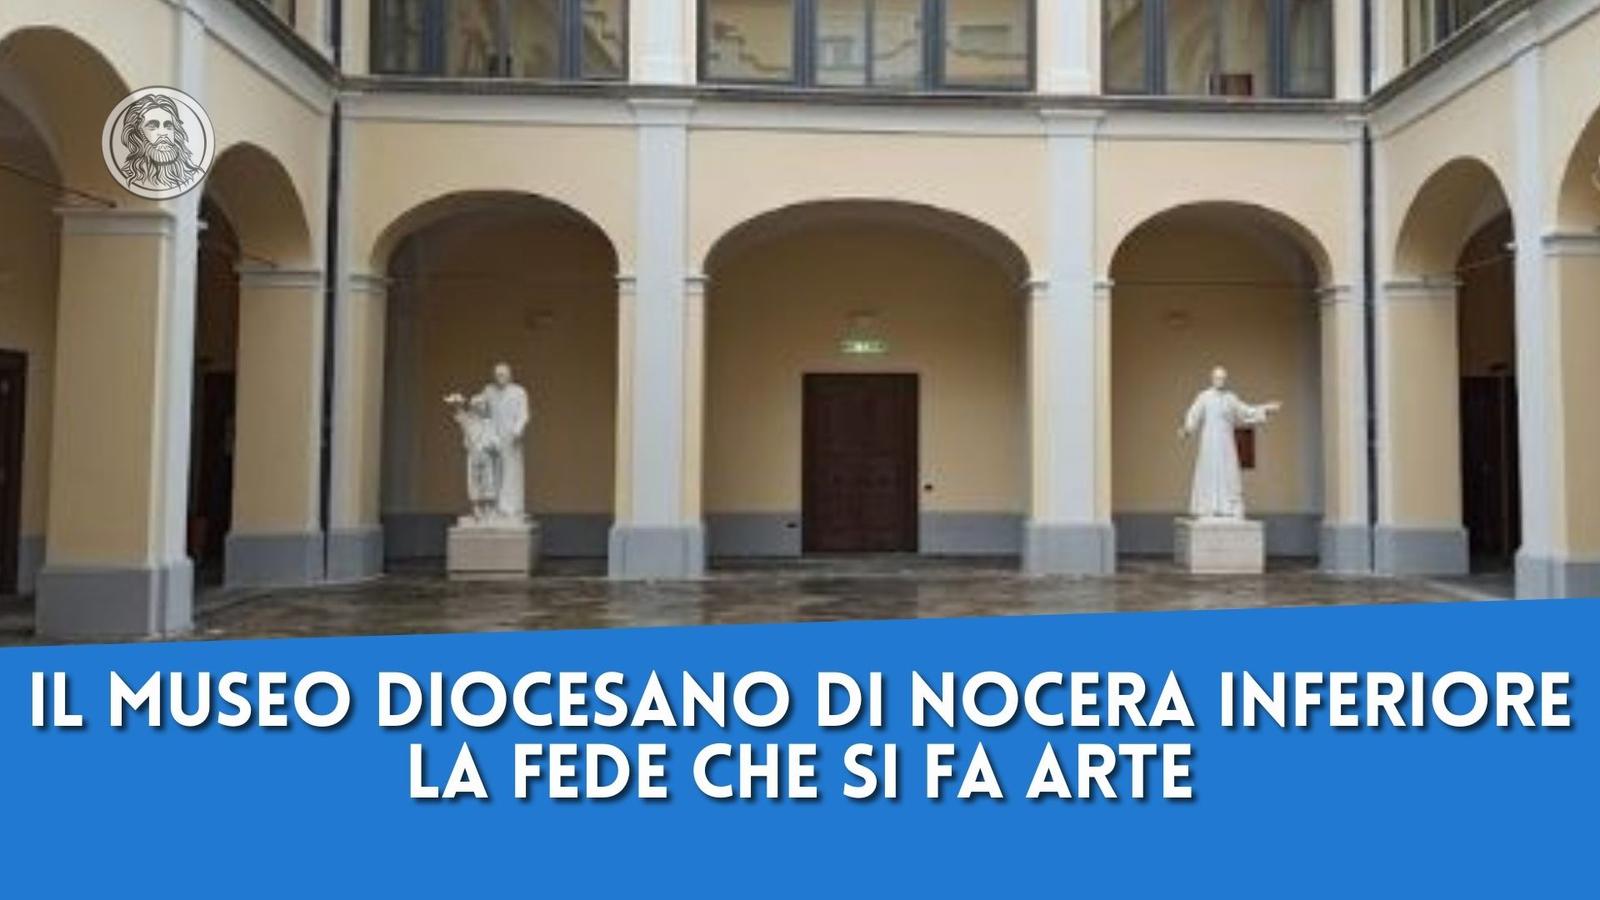 Il Museo Diocesano di Nocera Inferiore, la fede che si fa arte